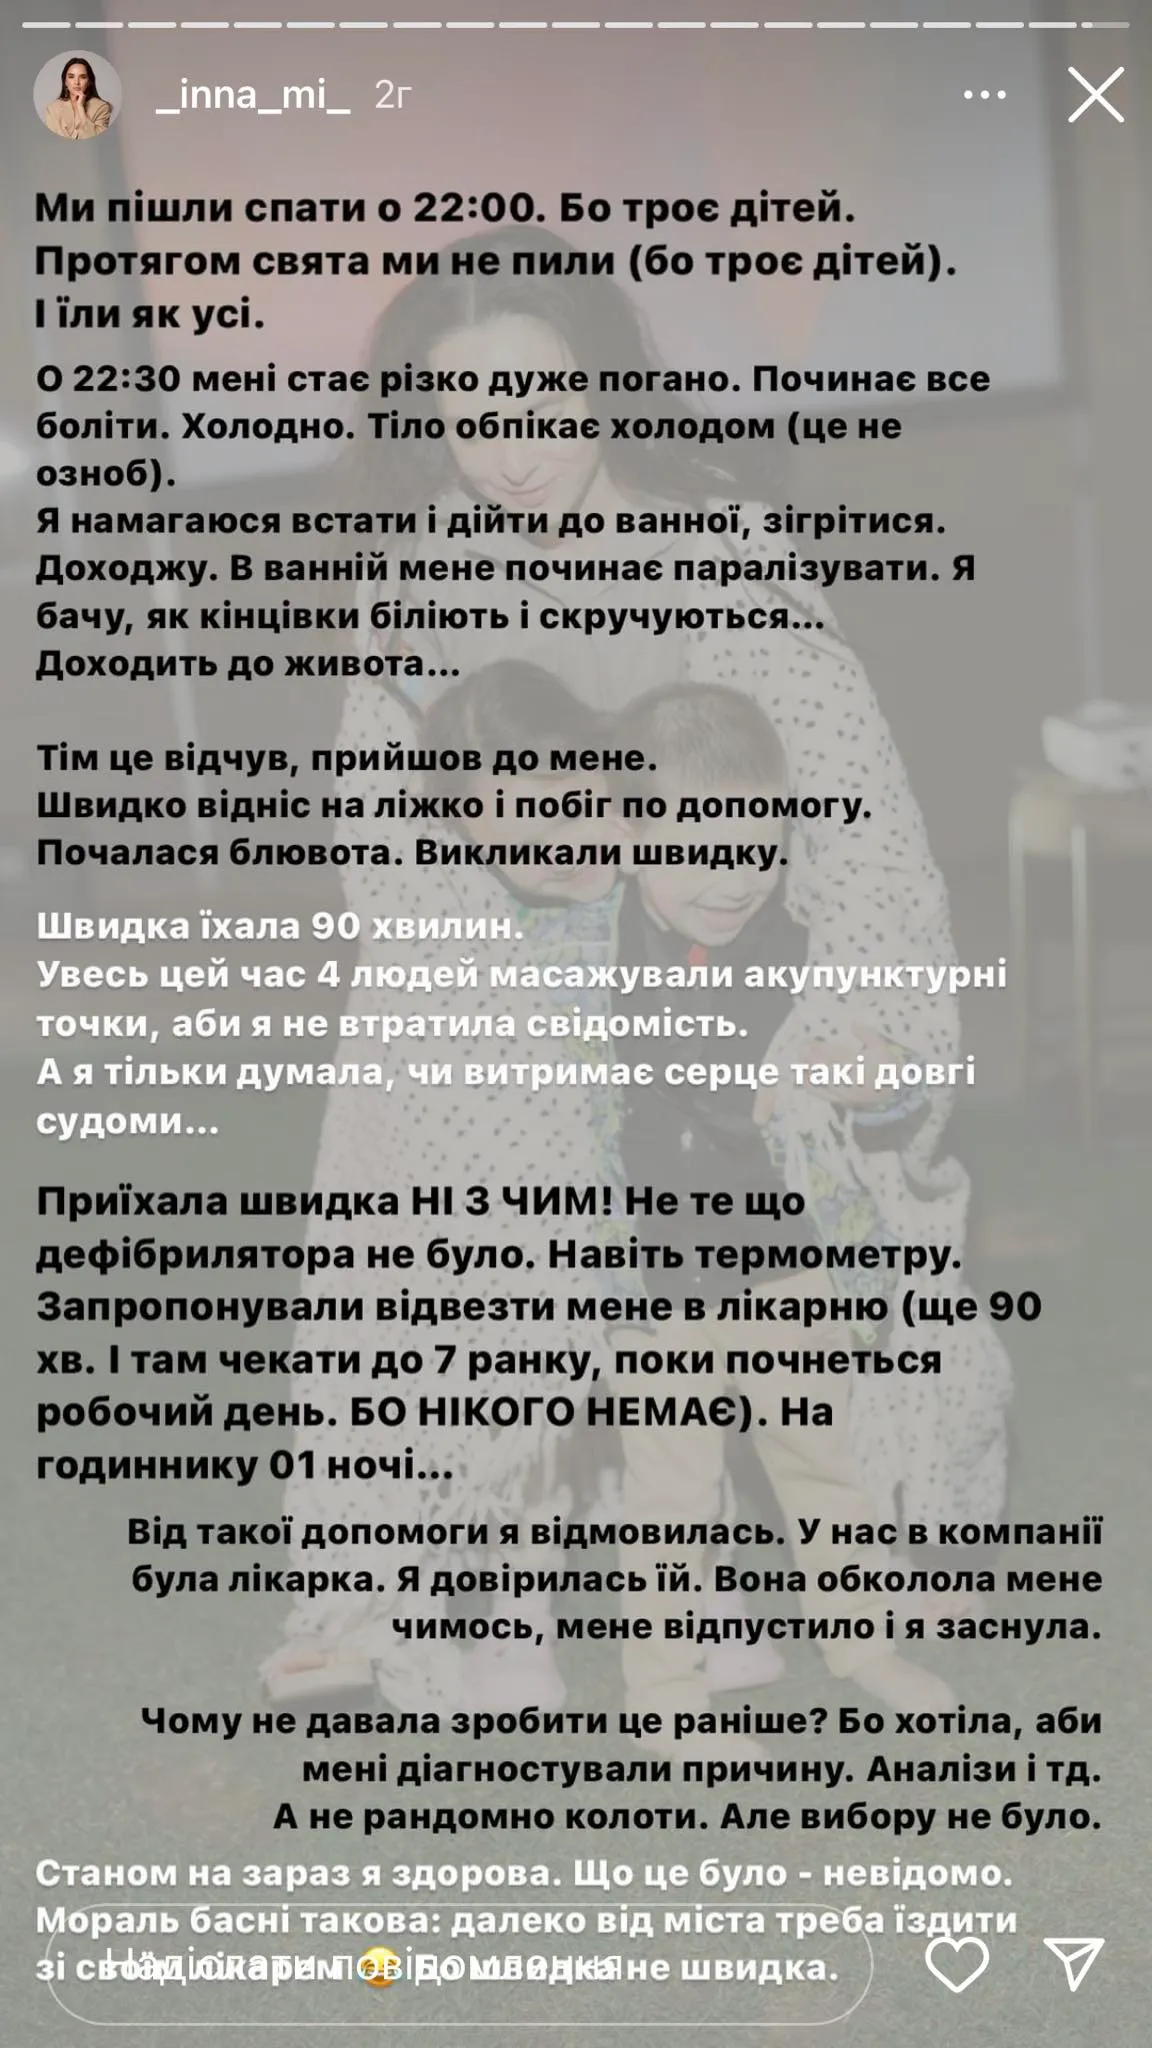 Инна Мирошниченко рассказала о плохом самочувствии